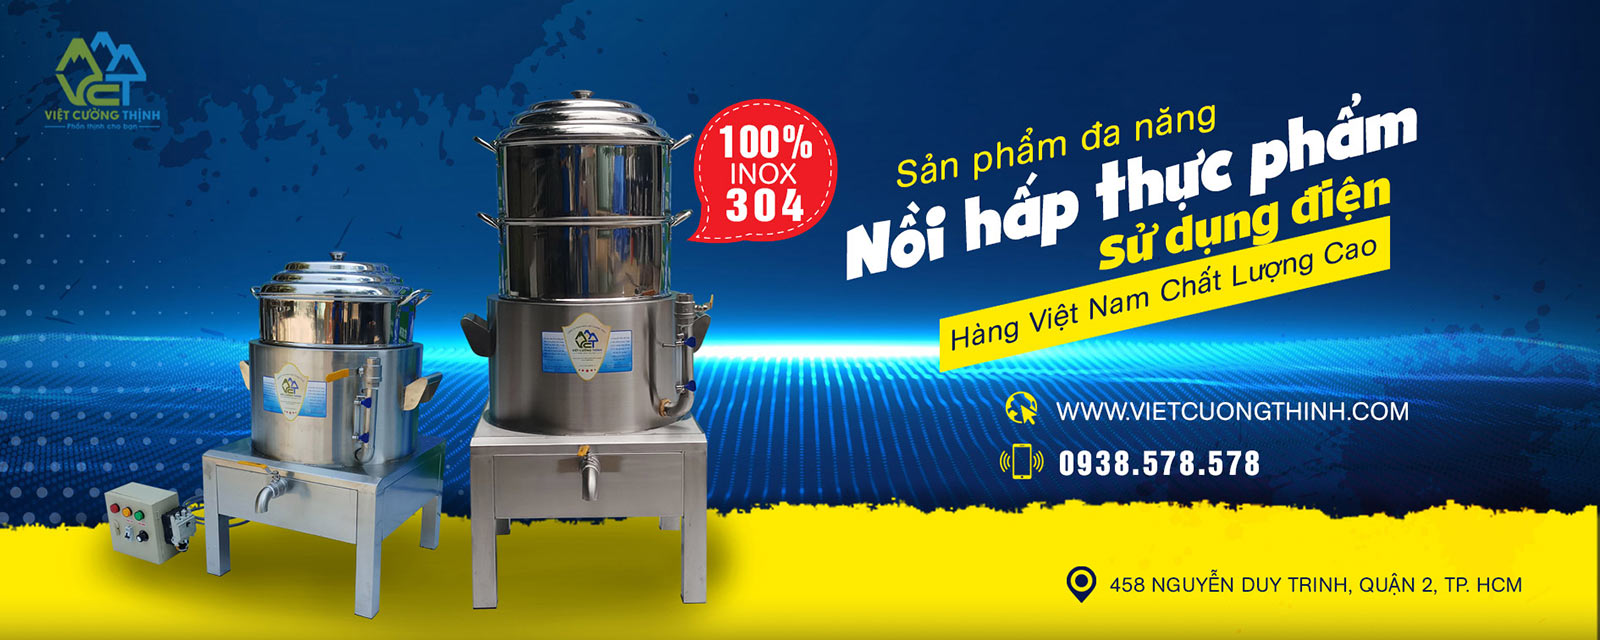 Nồi hấp thực phẩm bằng điện công nghiệp đến từ thương hiệu Việt Cường Thịnh.